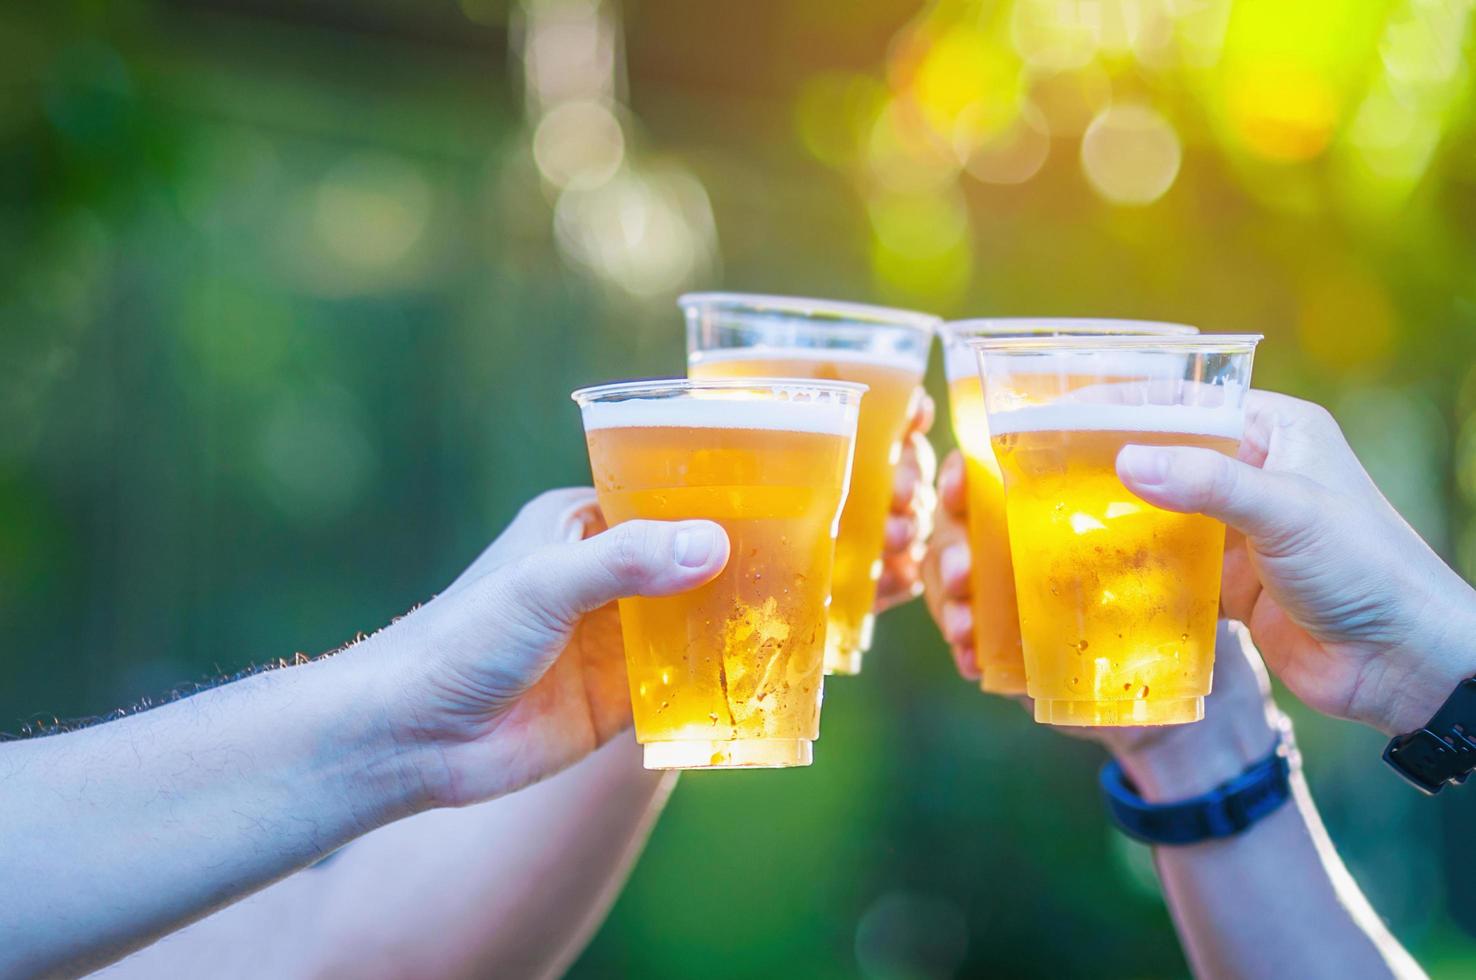 viering bier cheers concept - close-up handen houden glazen bier van mensen groep in buitenfeest tijdens hun overwinningswedstrijd of succesvolle taakvergadering foto